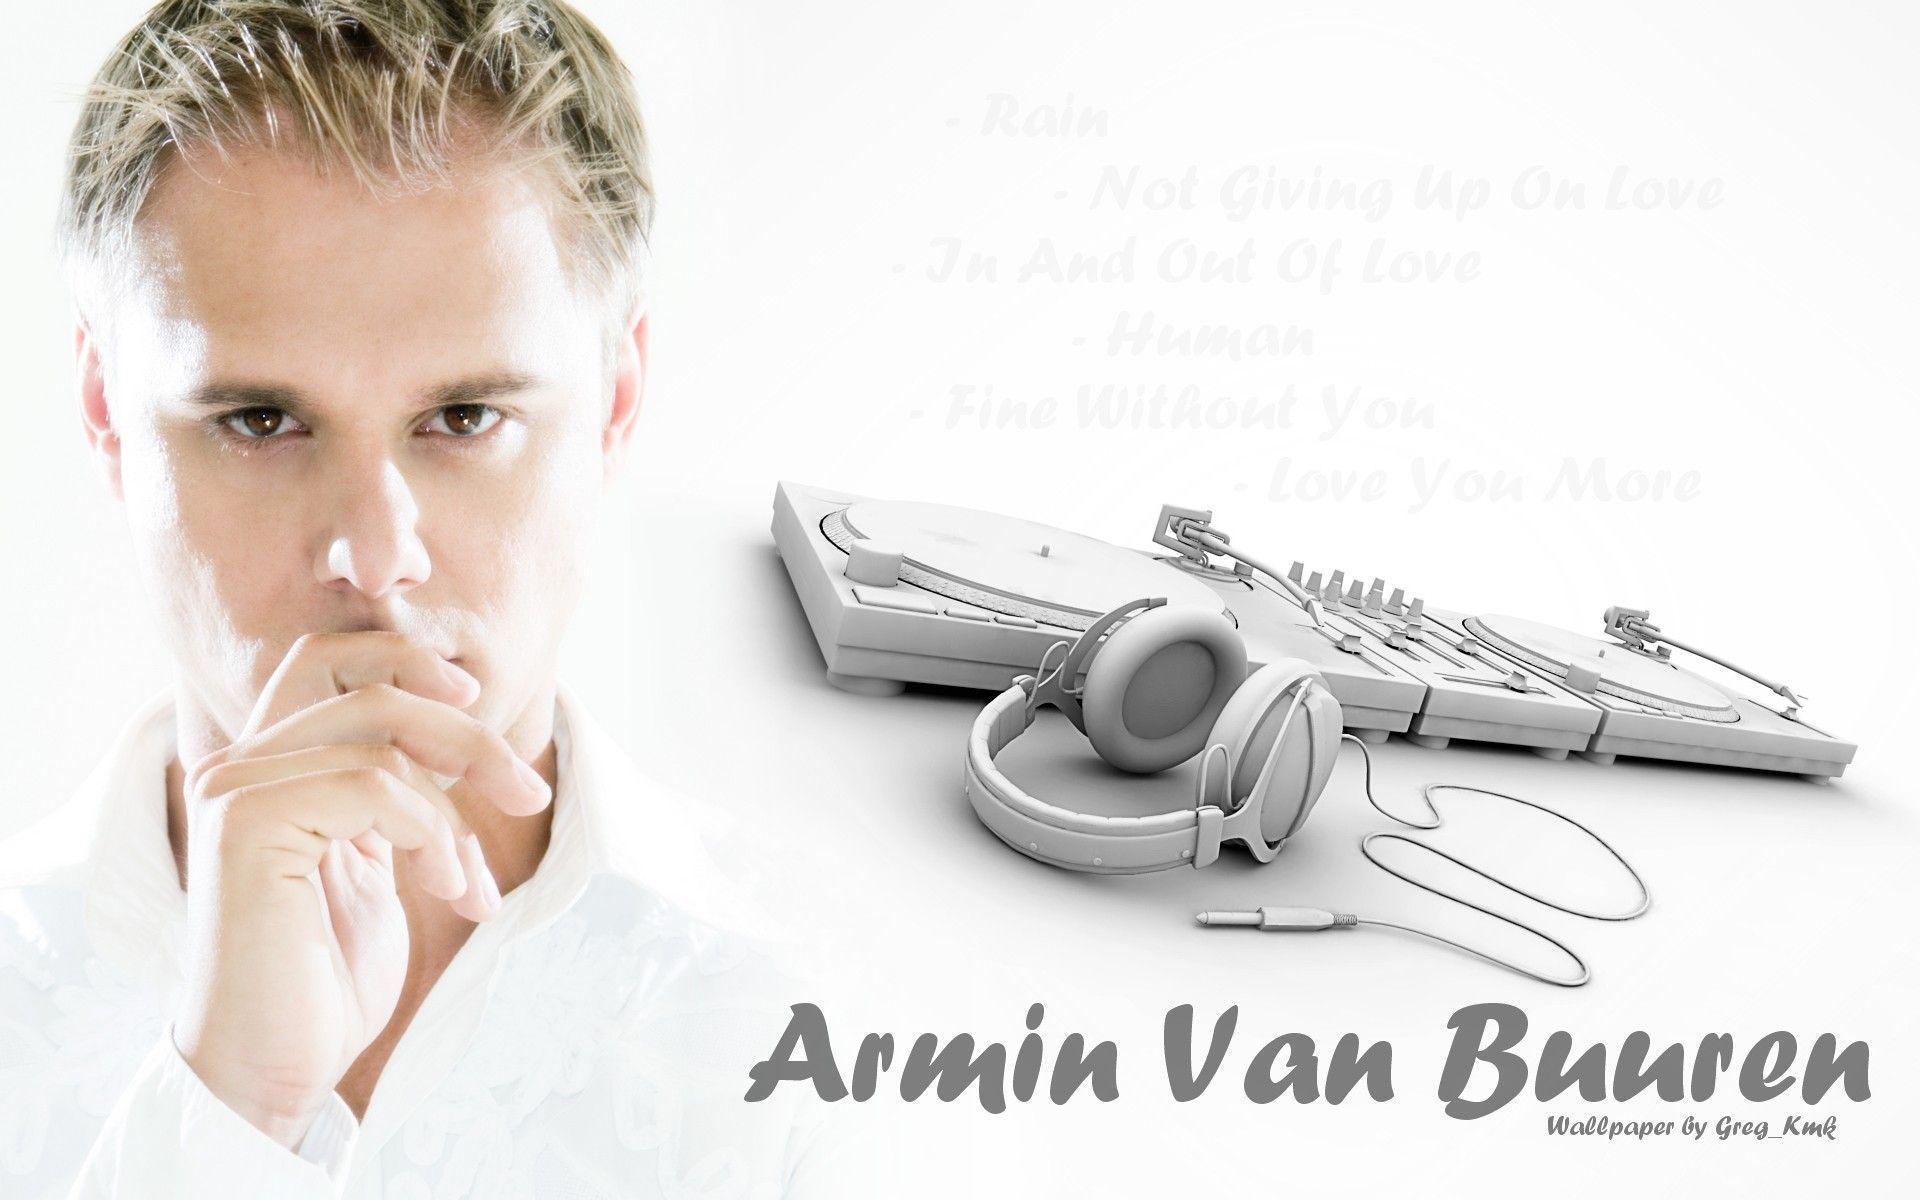 Armin Van Buuren Wallpaper (Wallpaper 1 2 Of 2)